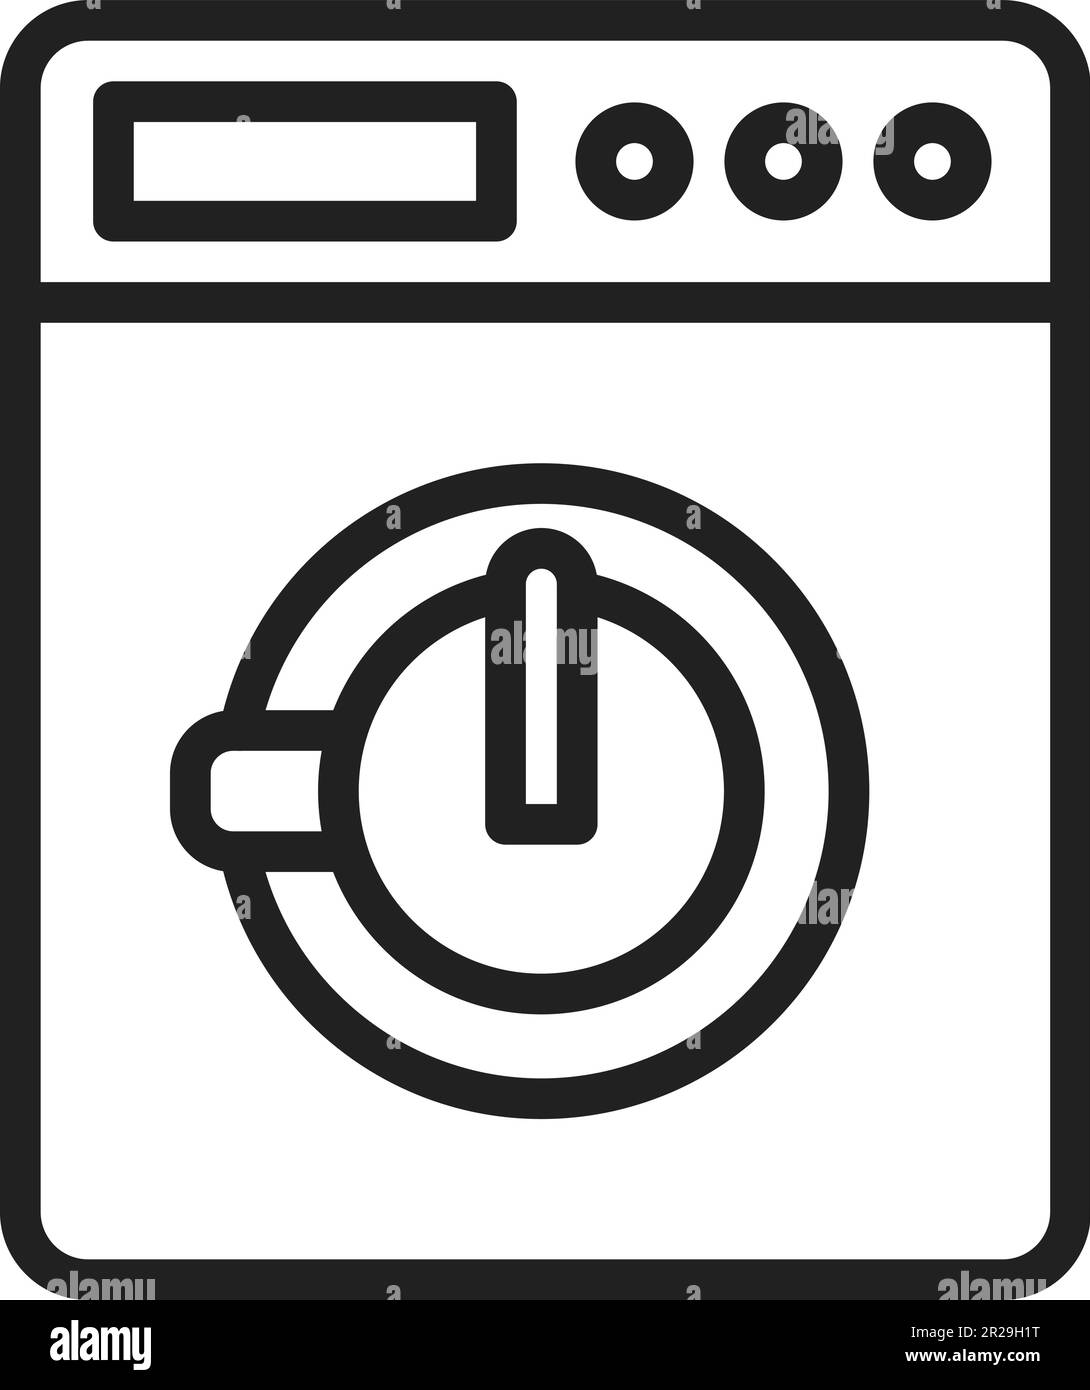 Immagine vettoriale dell'icona del programma di lavaggio. Illustrazione Vettoriale